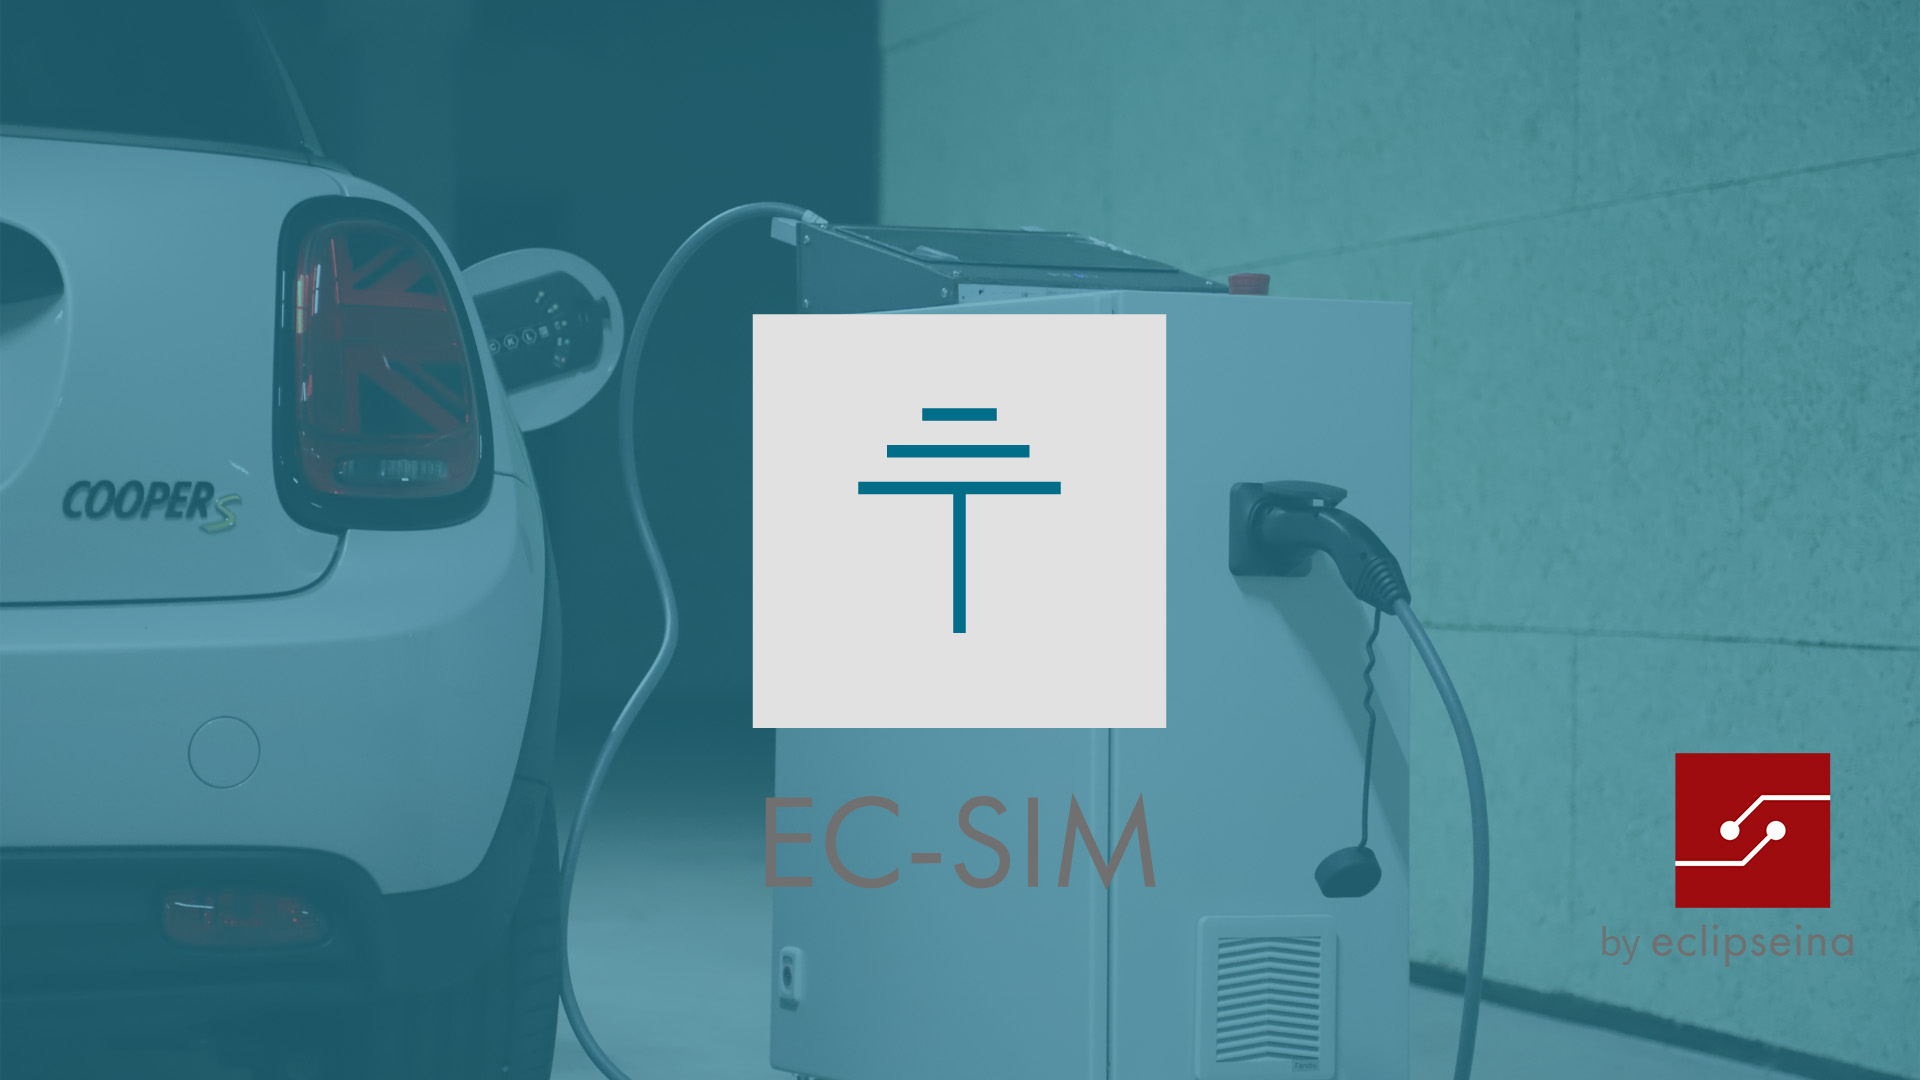 EC-SIM by Eclipseina